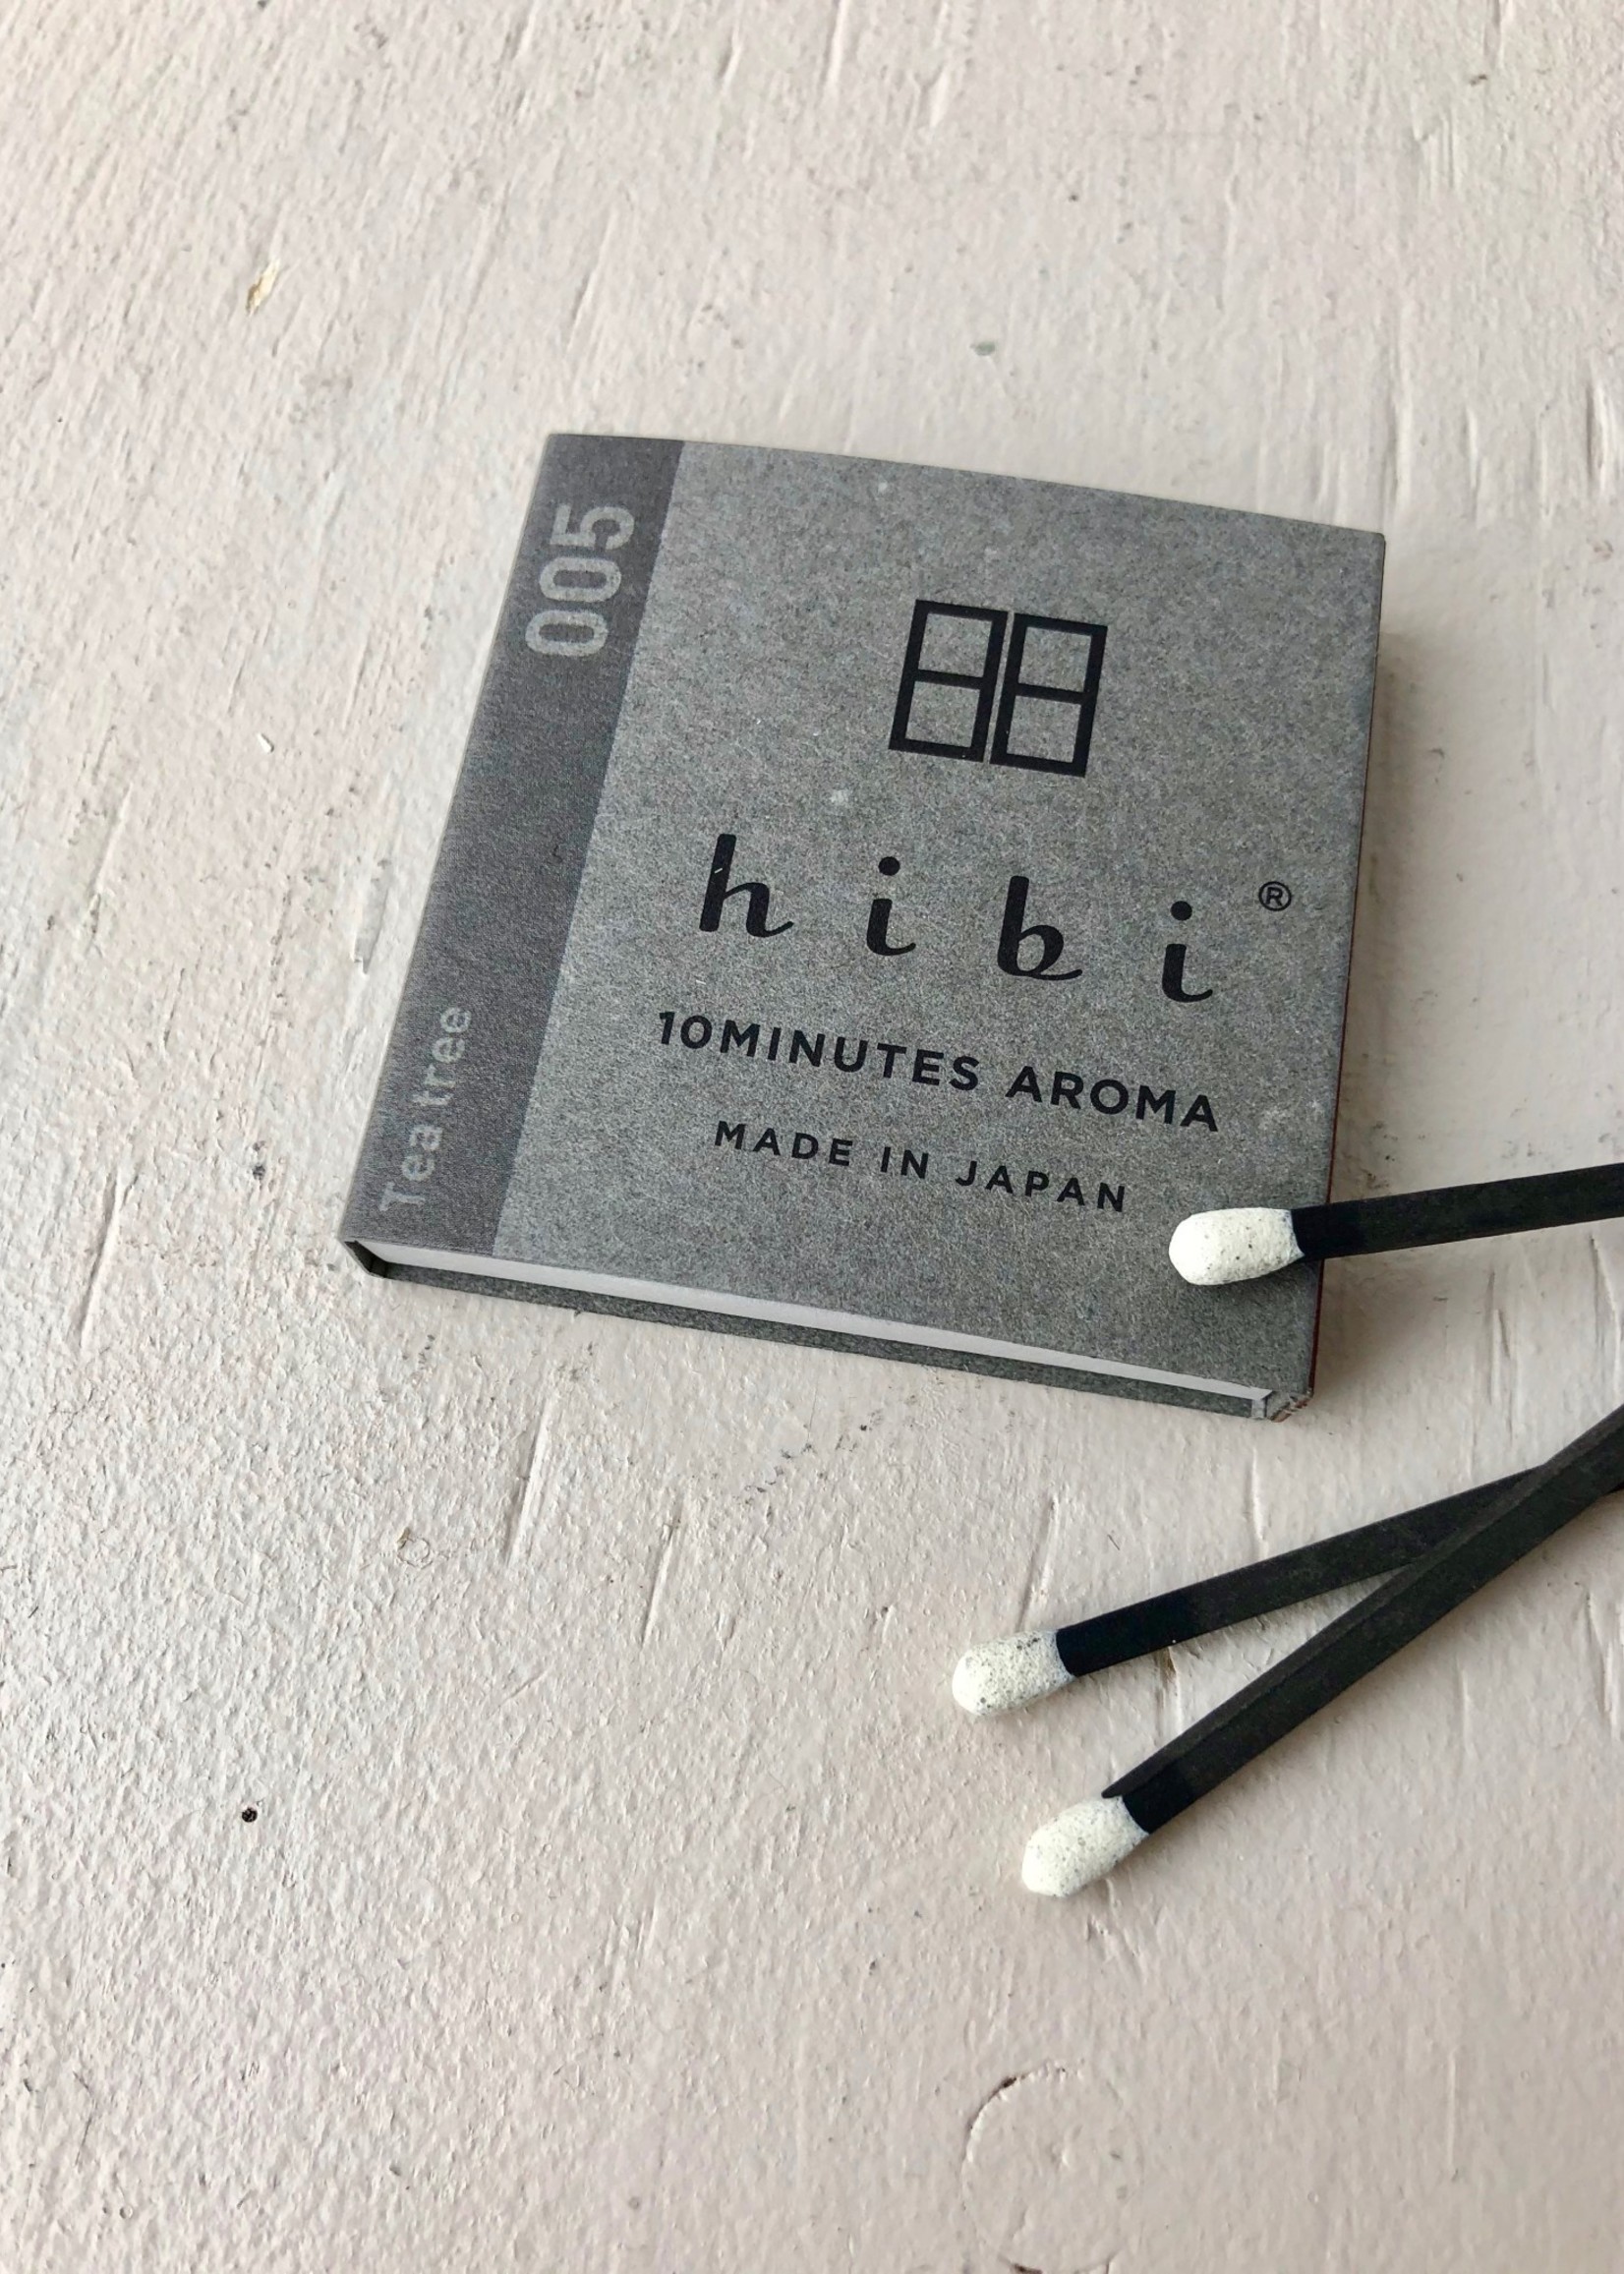 Hibi Incense Matches by Hibi